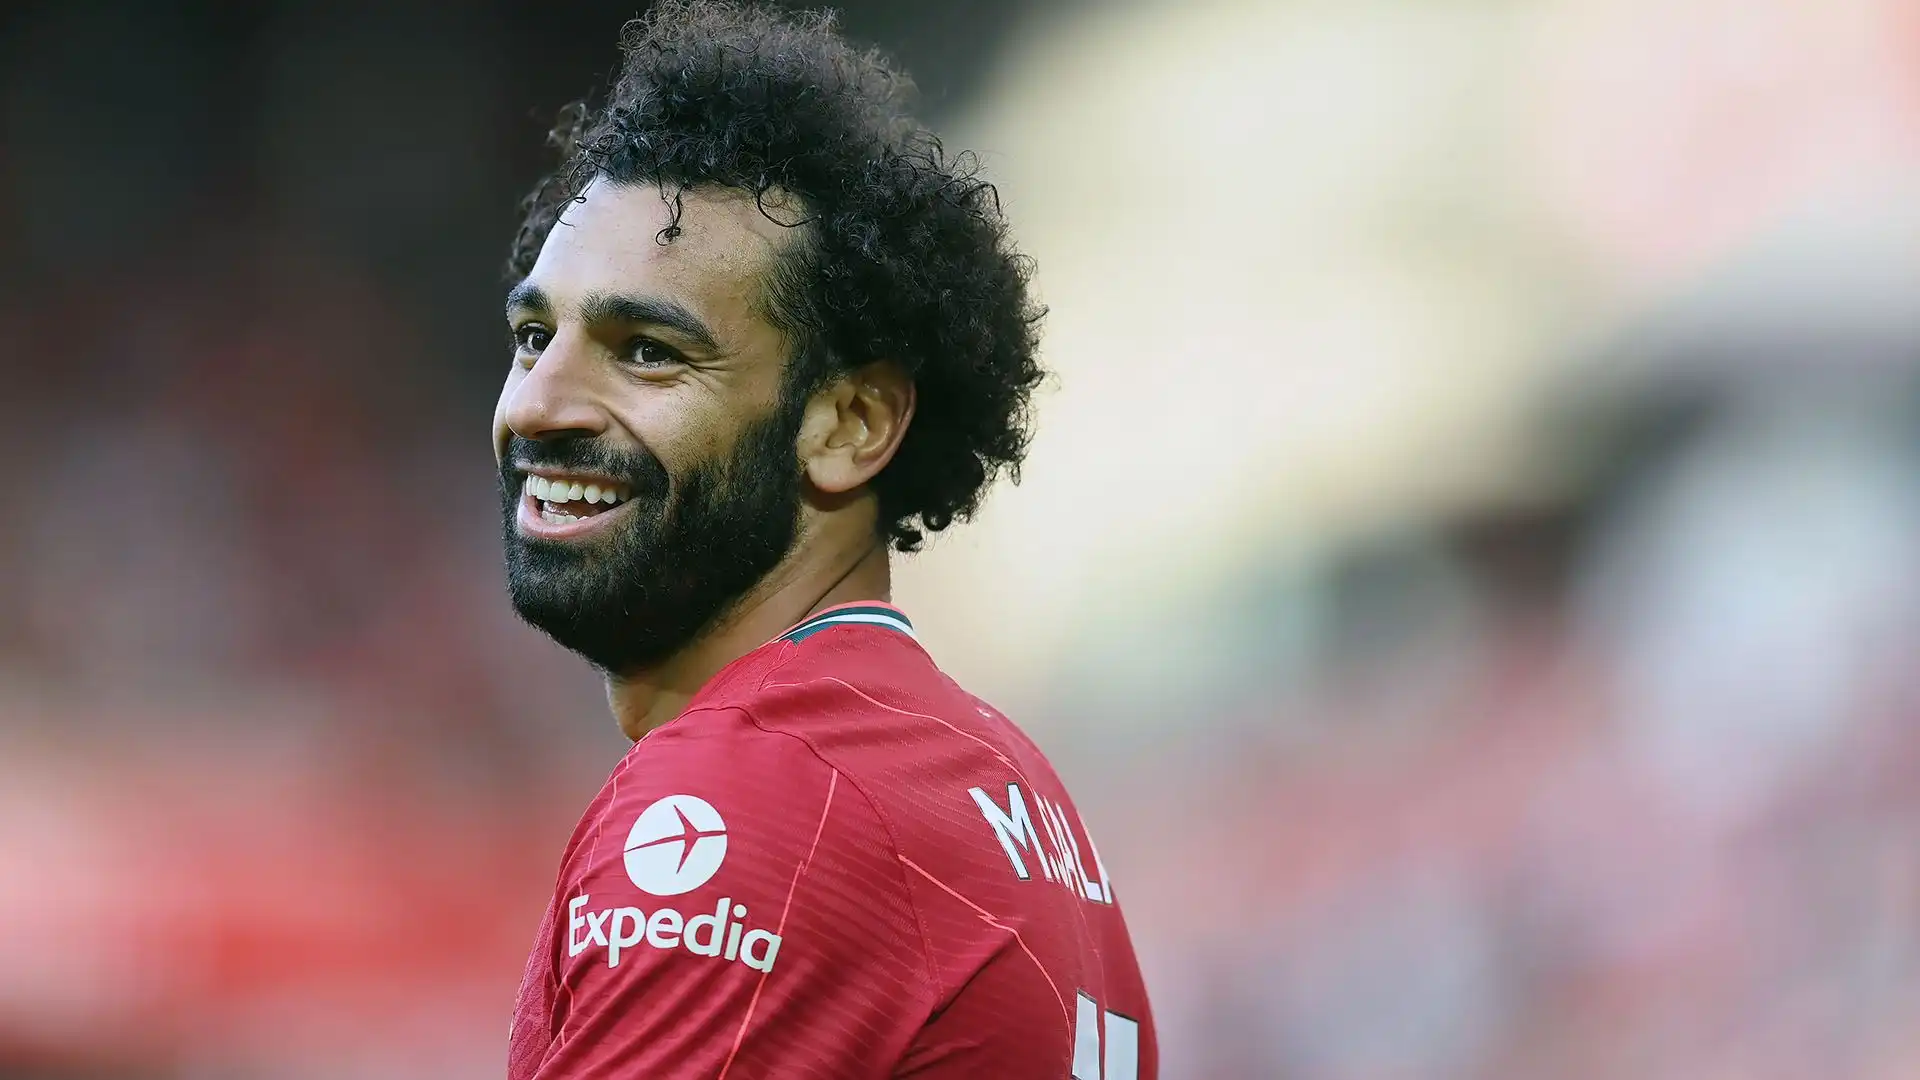 Secondo l'ex compagno di nazionale, Mido, Salah avrebbe già firmato un precontratto con una società della Saudi League